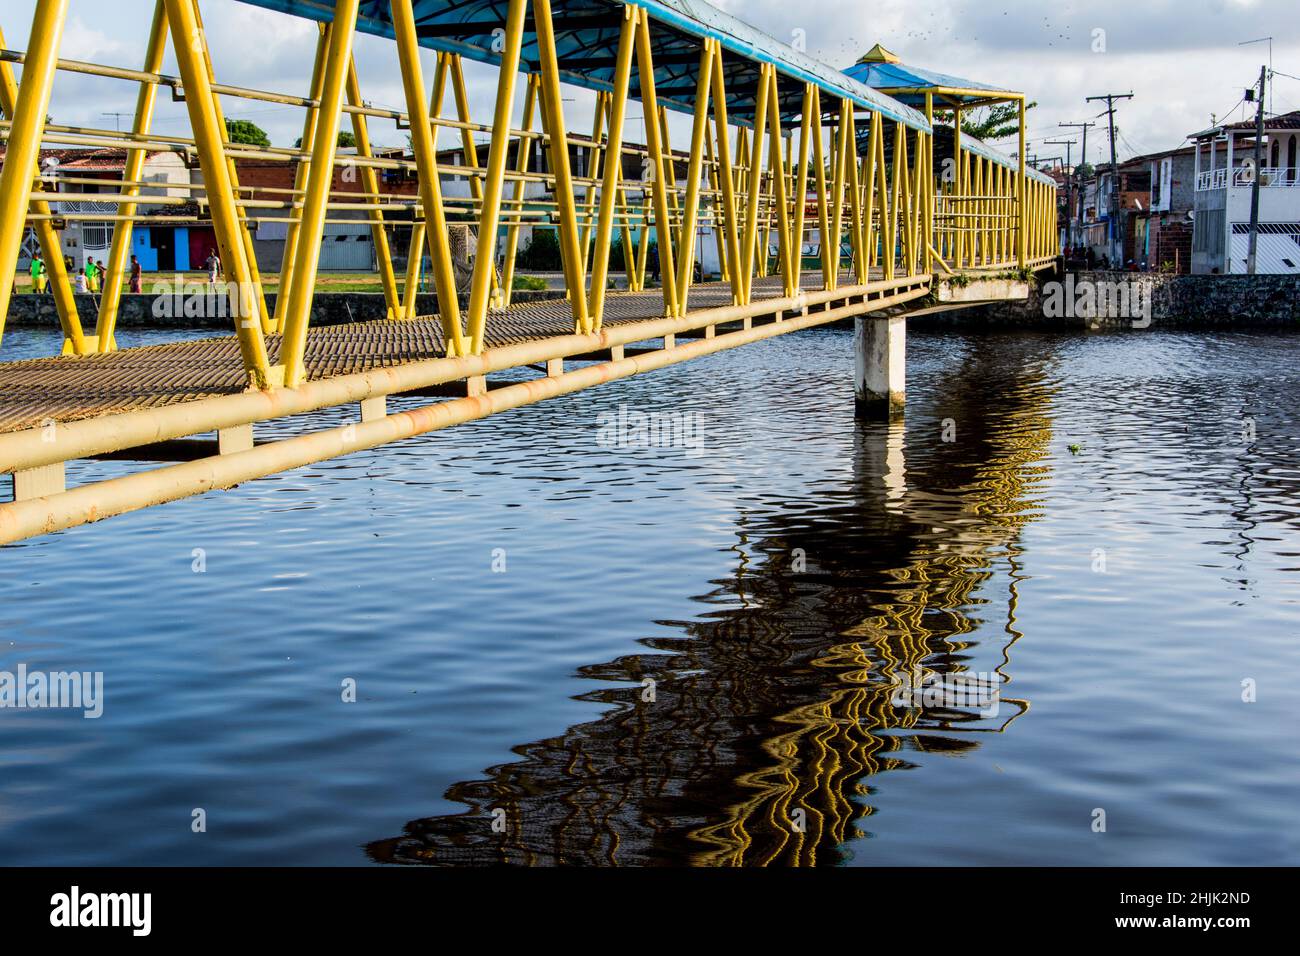 Pasarela peatonal de hierro sobre un río en colores amarillo y azul. Reflexión en el agua. Foto de stock